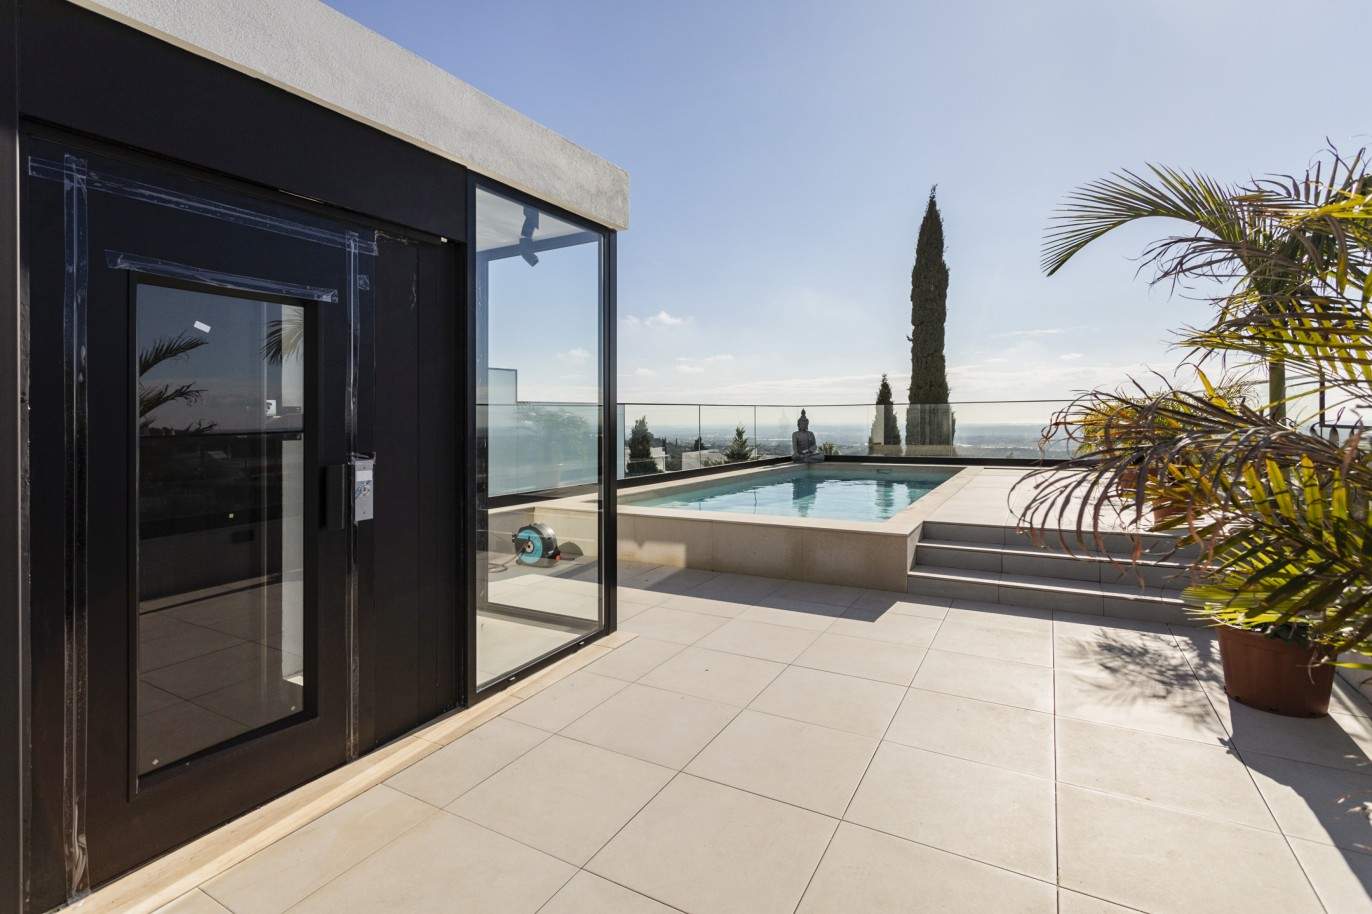 3 Bedroom Villa, with swimming pool, for sale in Santa Barbara de Nexe, Algarve_213419